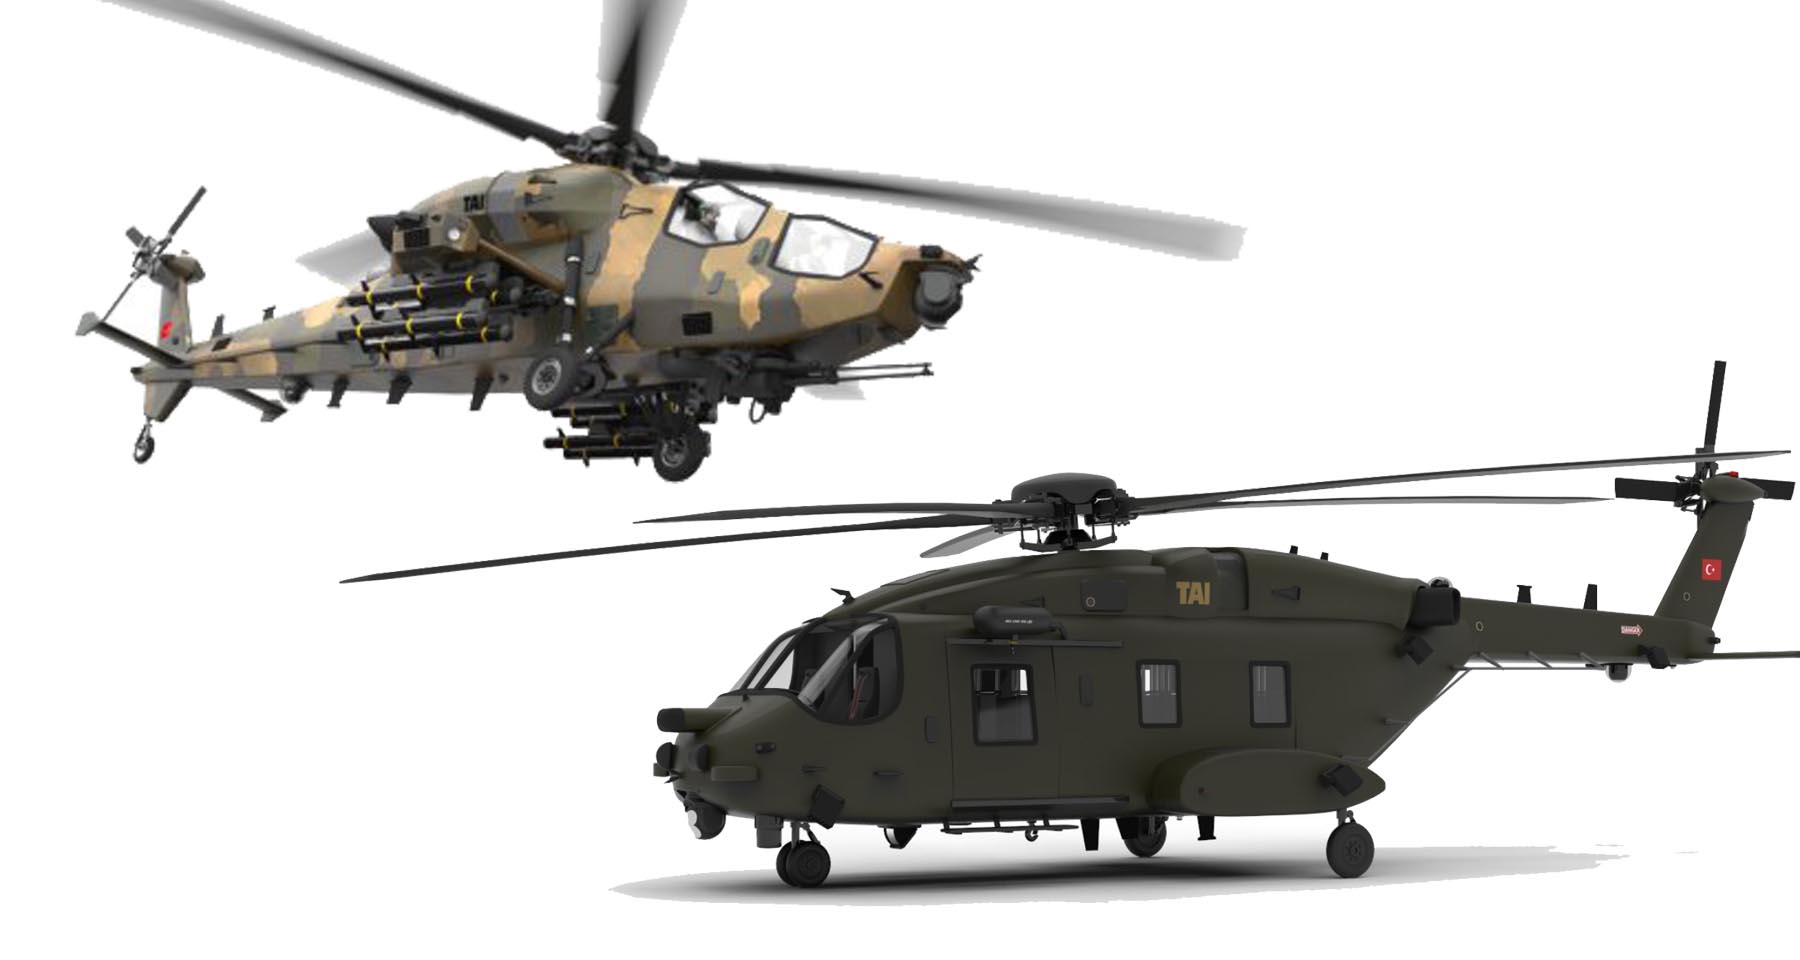 ATAK 2 helikopteri için imzalar atıldı: İşte heyecan uyandıran özellikleri